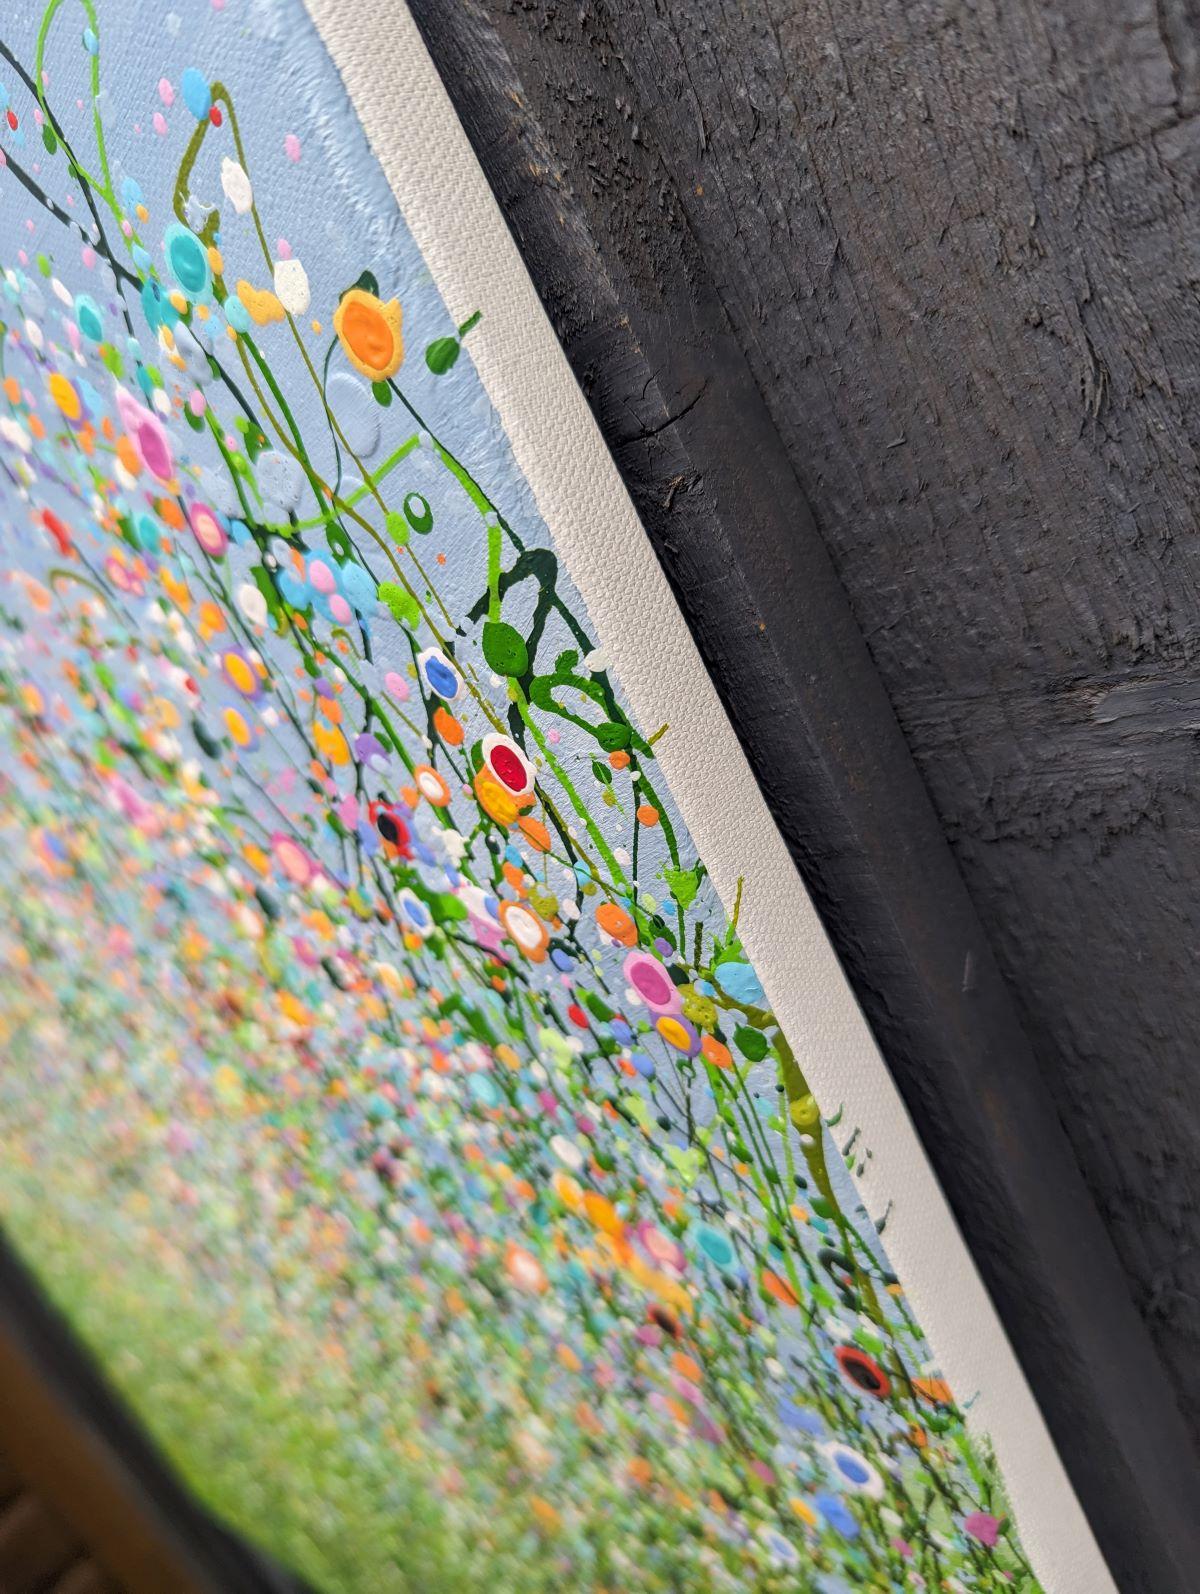 Wild Meadow Symphony #3 - Une peinture originale semi-abstraite de Lucy Moore. En utilisant sa technique caractéristique de l'herbe filée et une palette colorée, Lucy a créé une touche semi-abstraite à ses peintures classiques de prairies. Cette